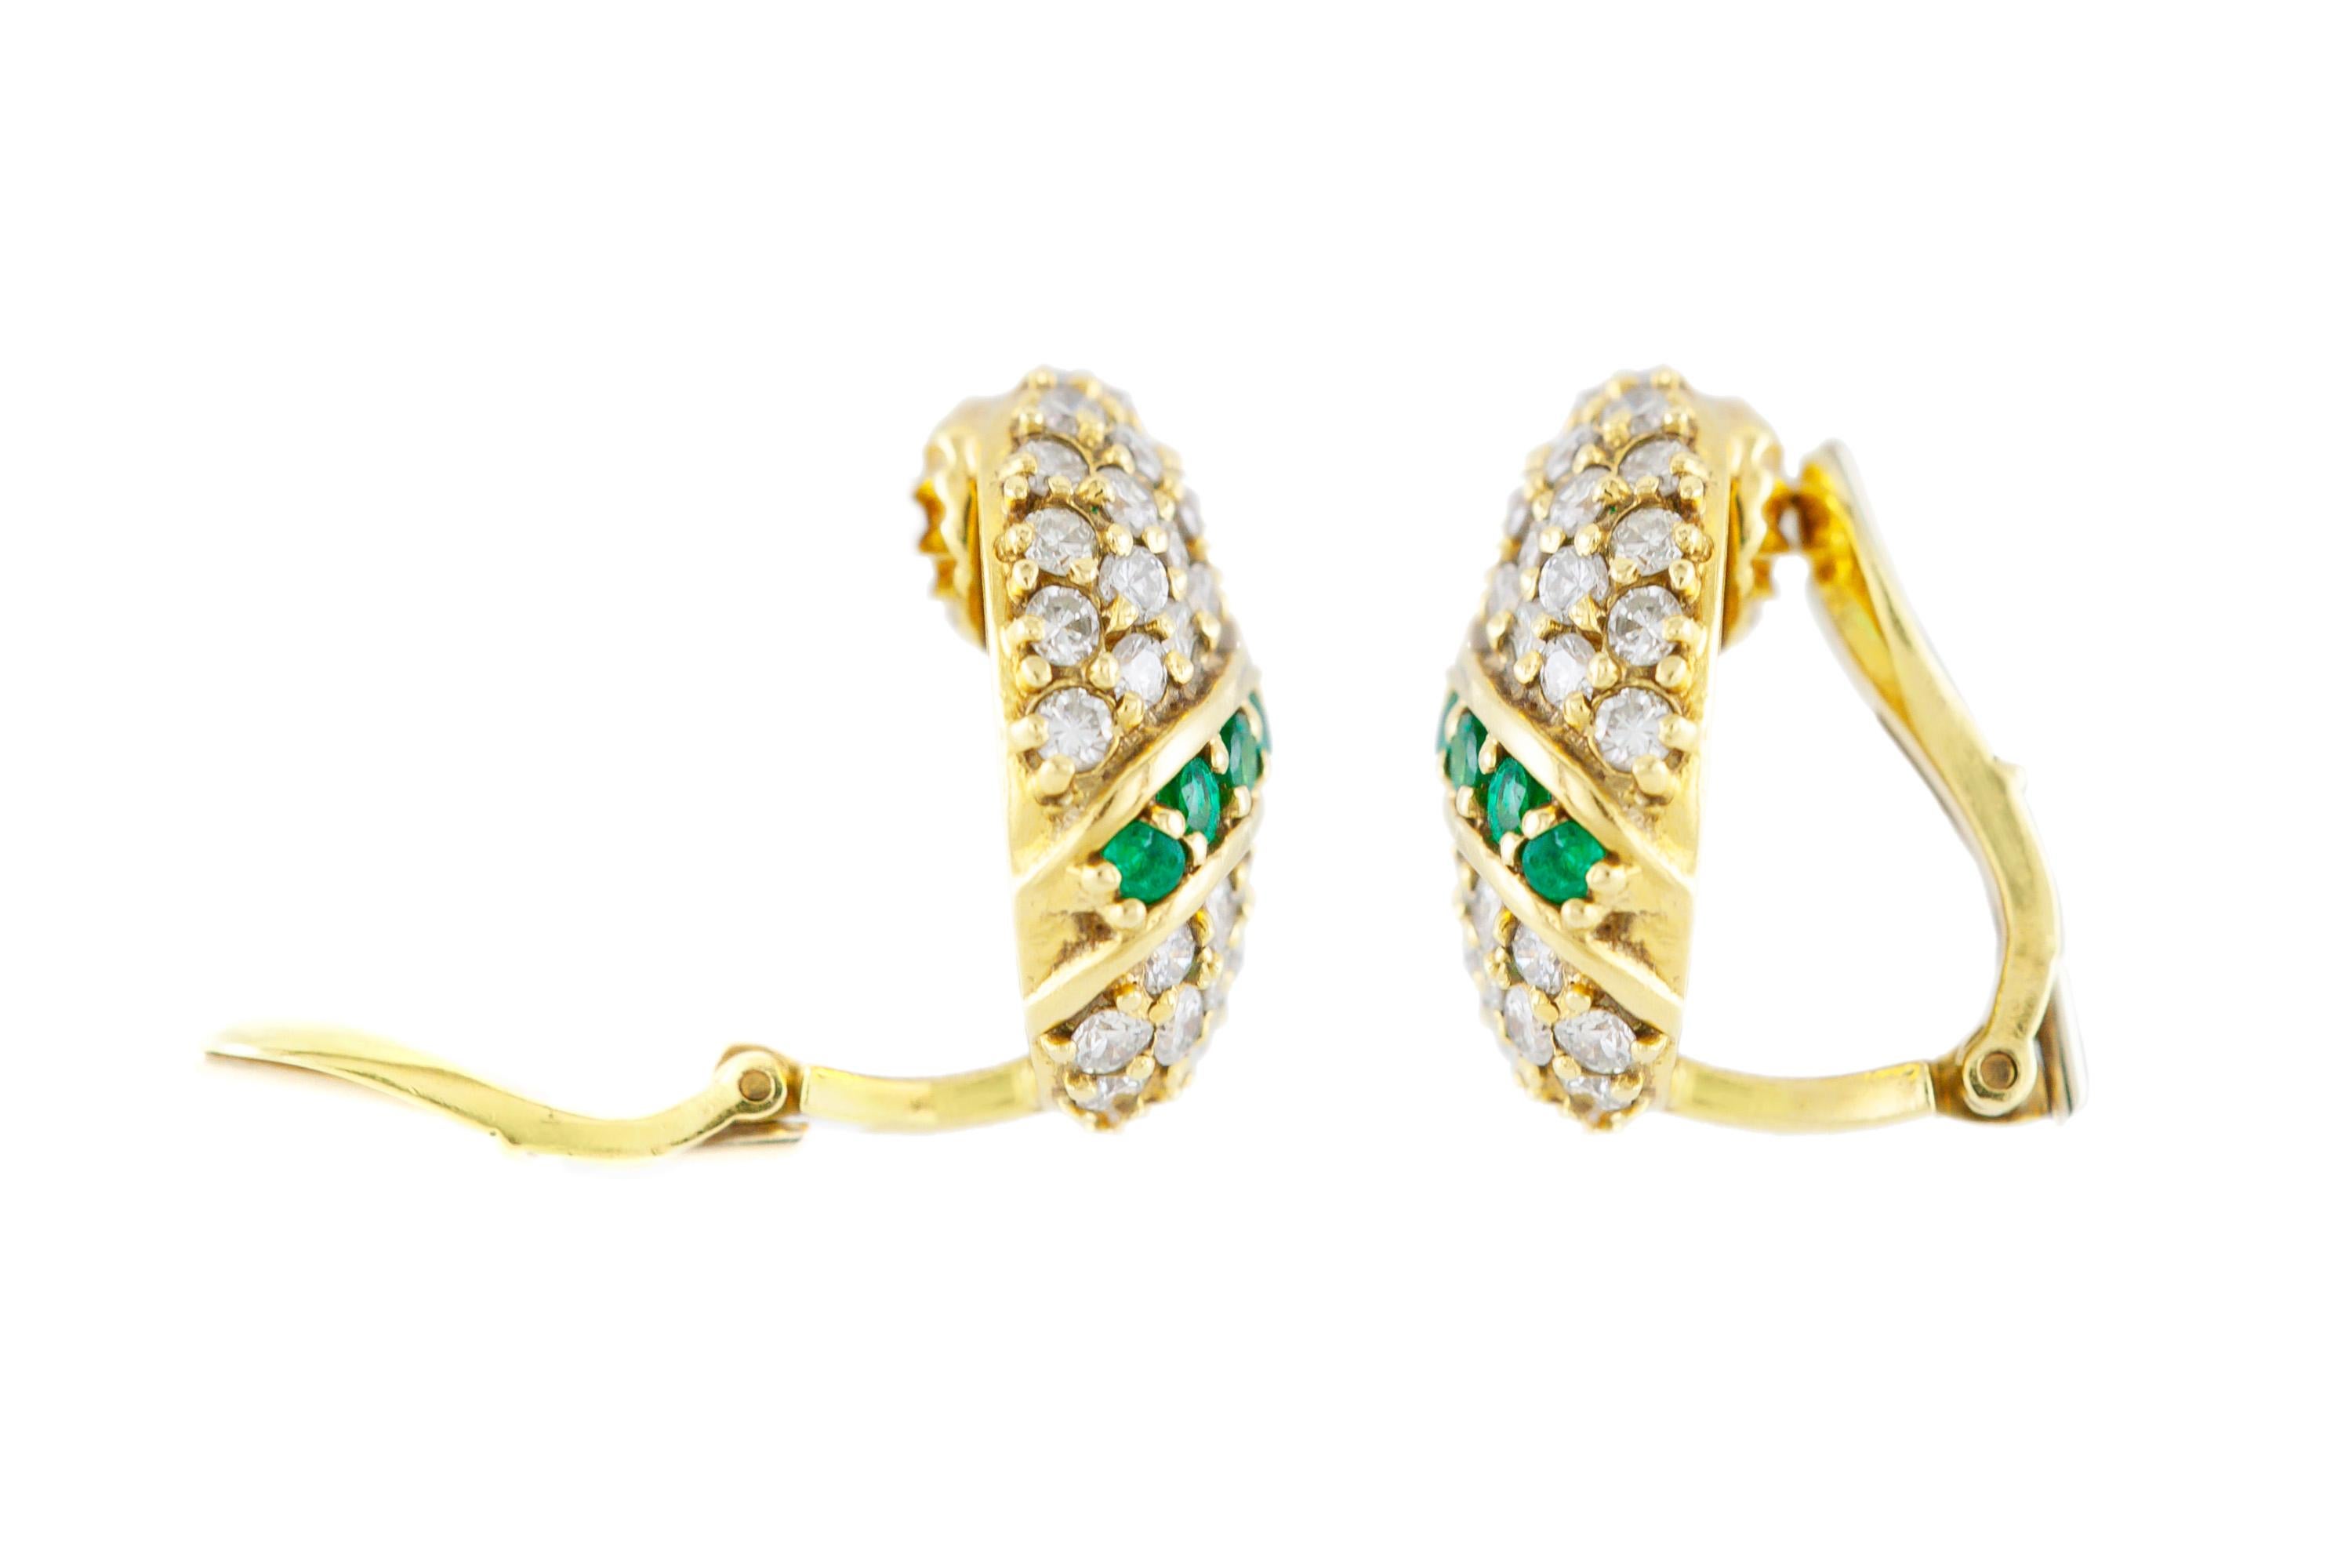 Die Ohrclips sind aus 18 Karat Gelbgold gefertigt und mit Diamanten mit einem Gesamtgewicht von 2,14 und Smaragden mit 1,00 Karat besetzt. 
Um 1930.

